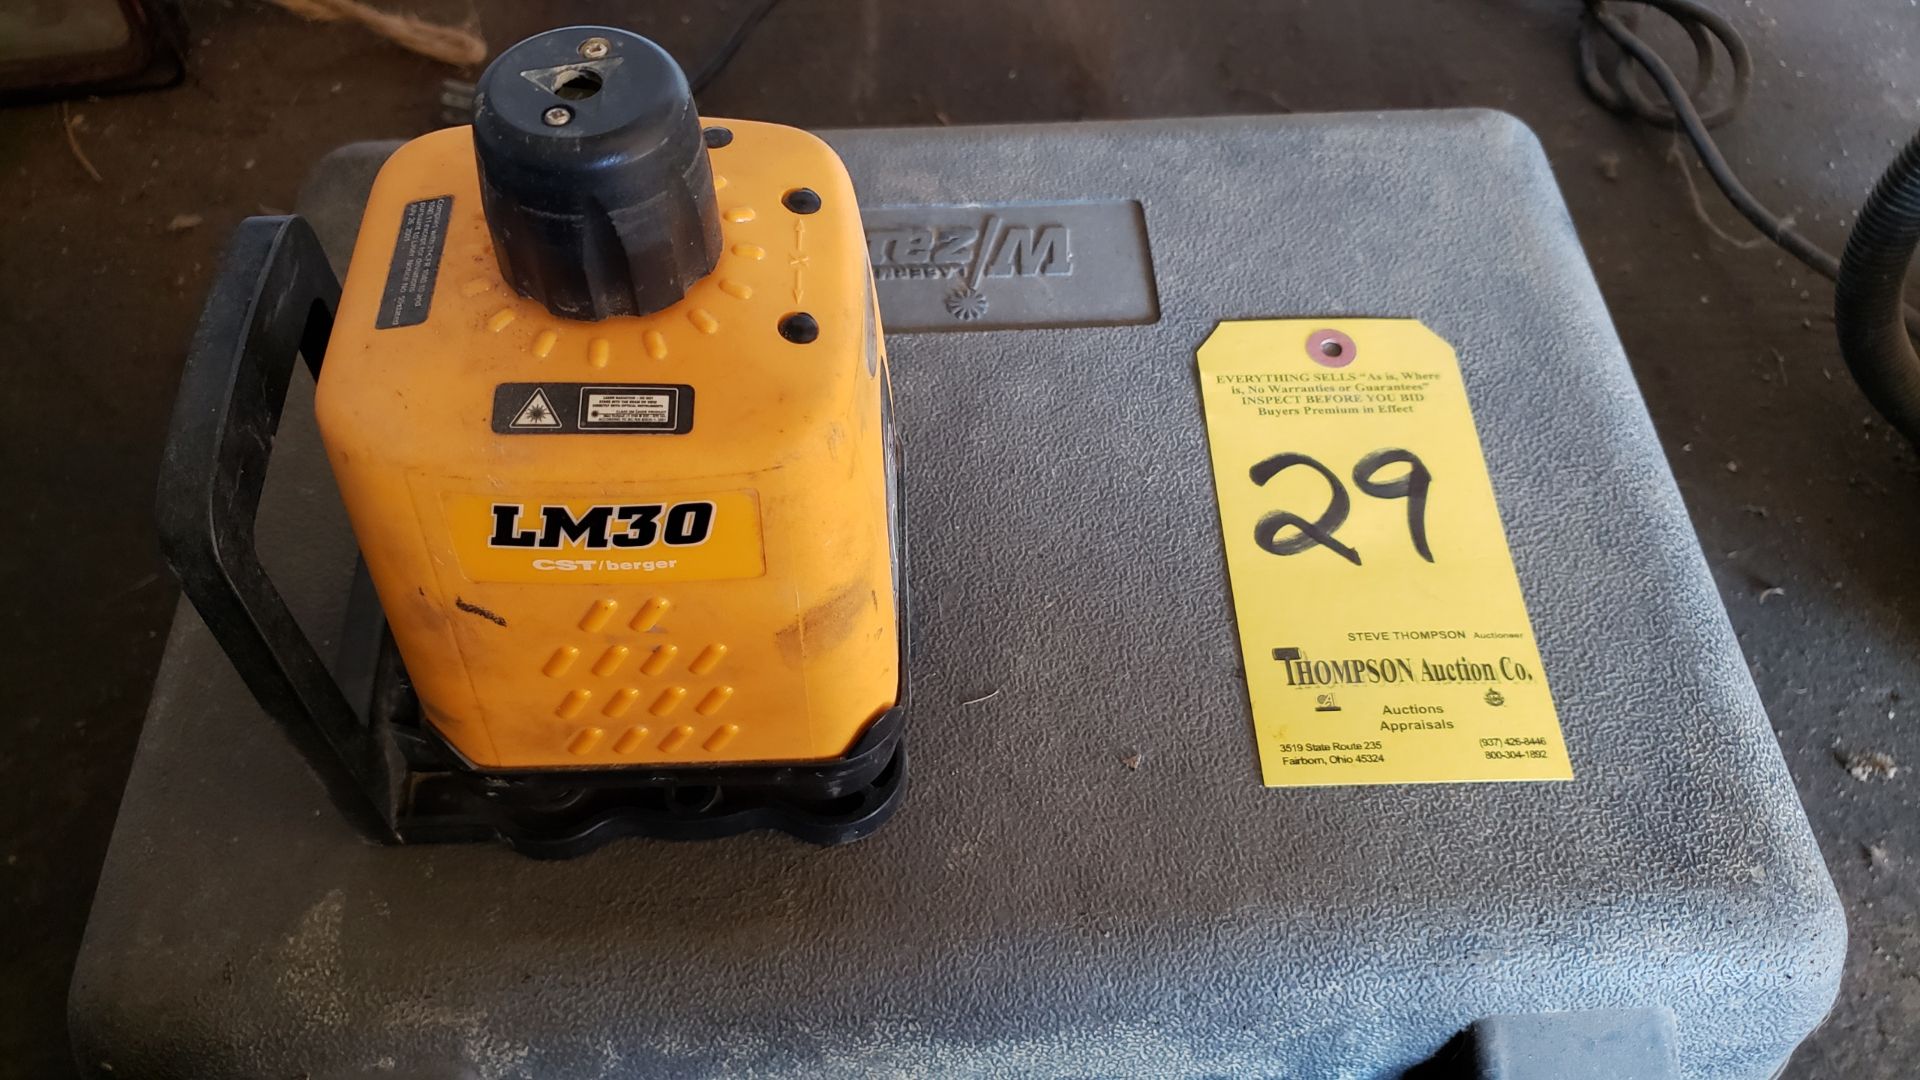 Lasermike Wizzard Model LM30 w/ Case